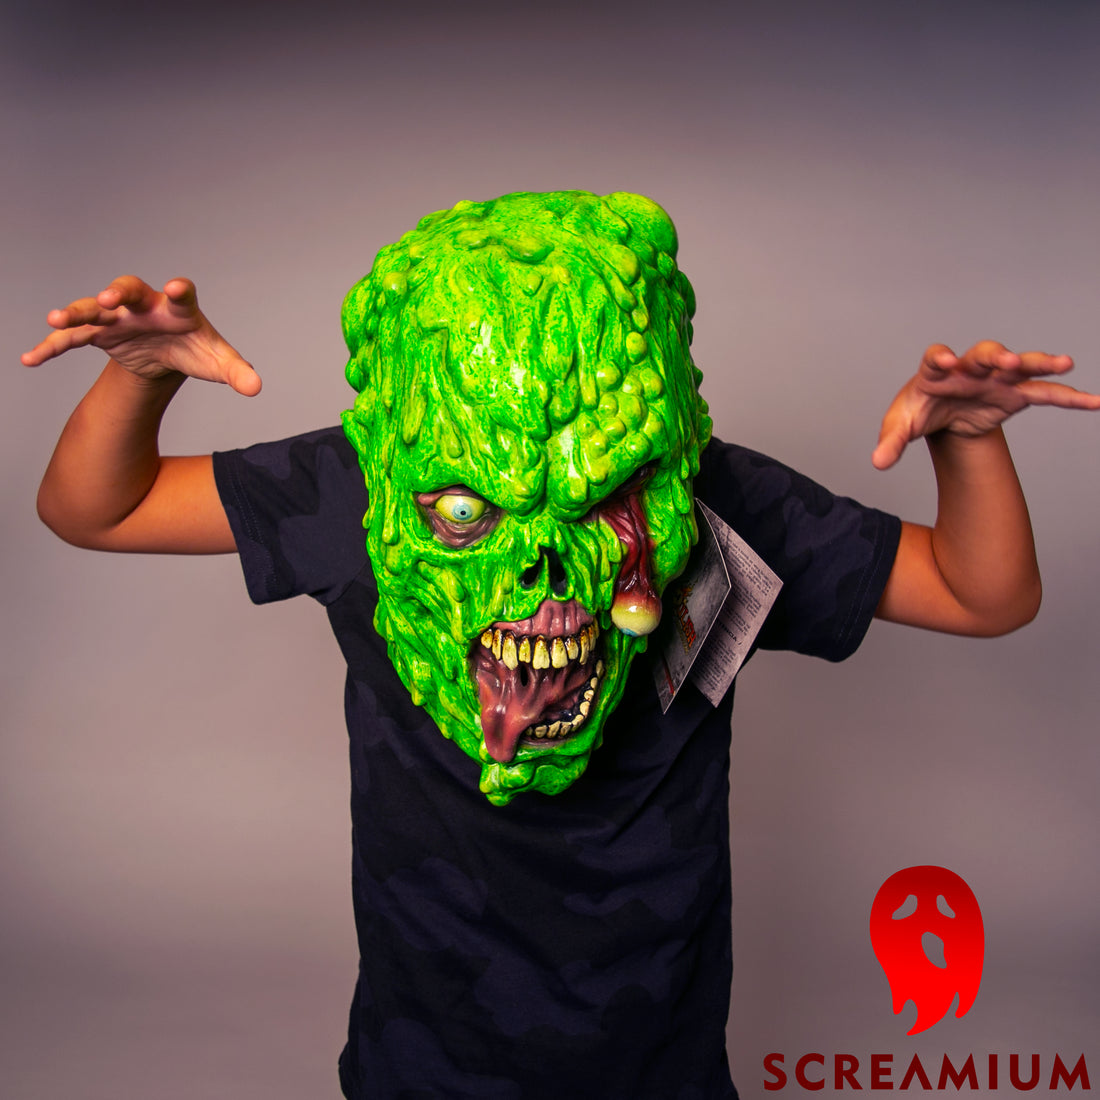 Biohazard Zombie Mask